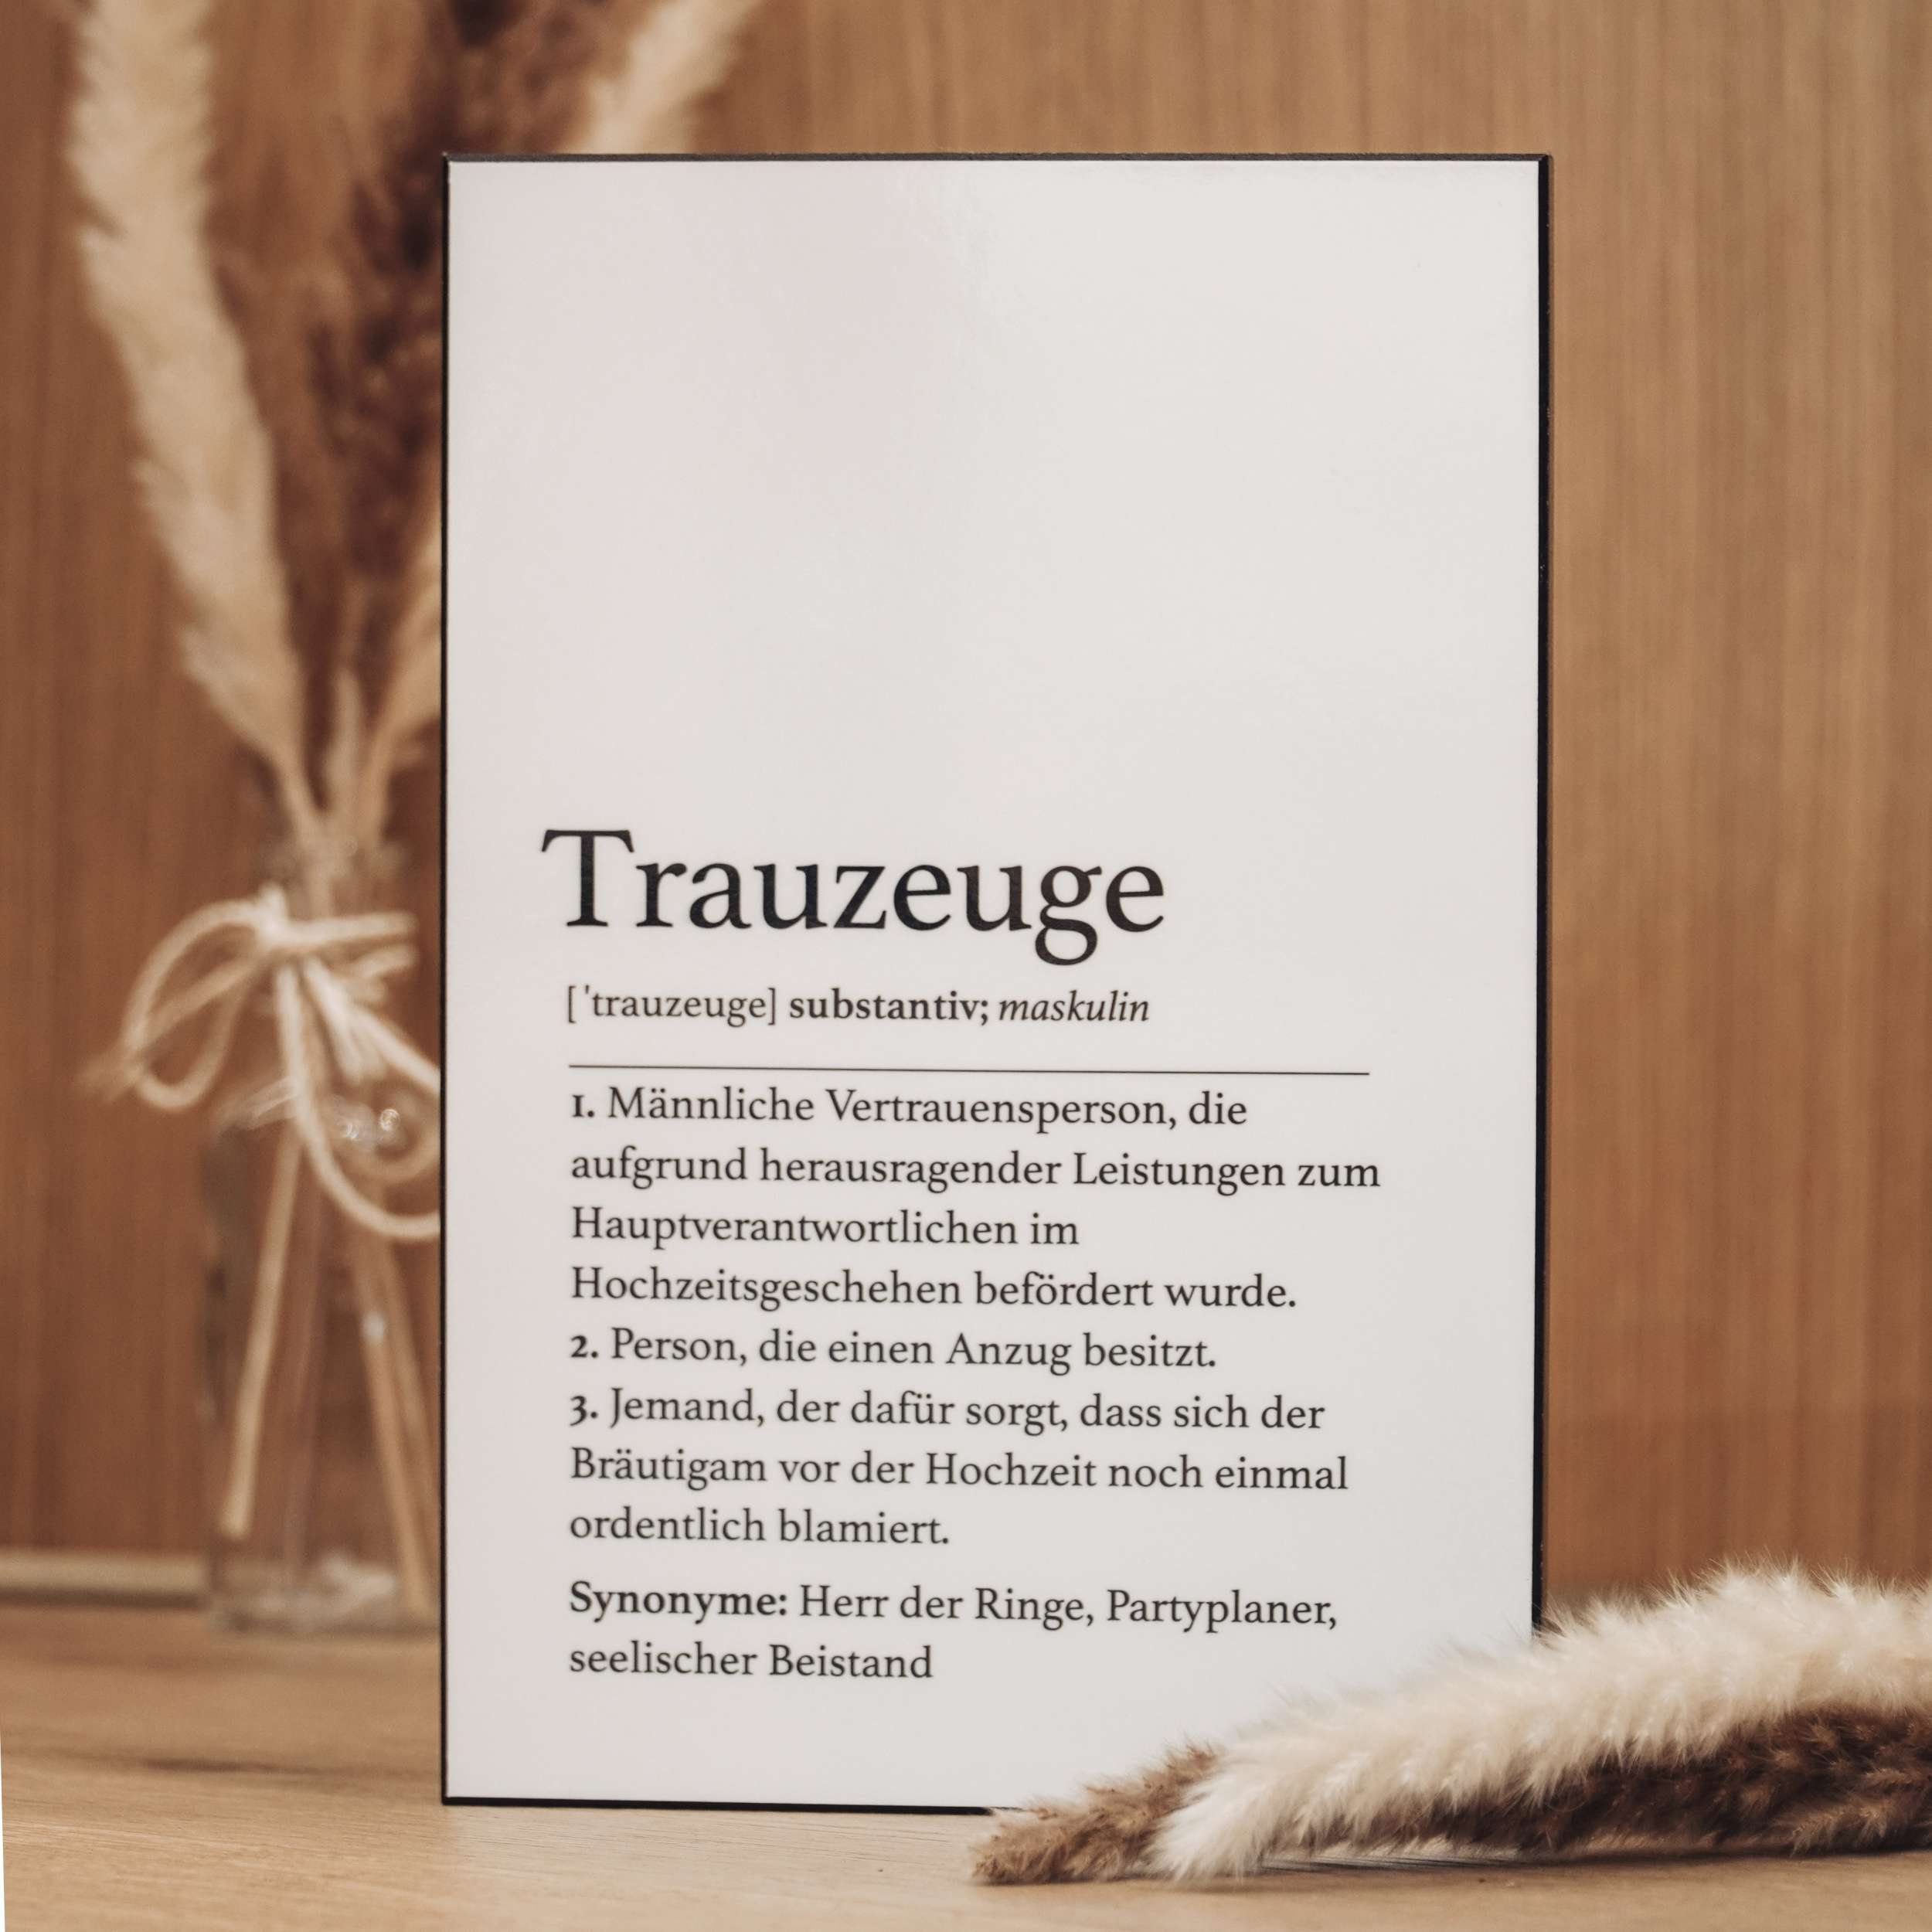 Handgefertigte Definitionstafel „Trauzeuge“ aus erstklassigem Material – das ideale Geschenk für euren Trauzeugen.